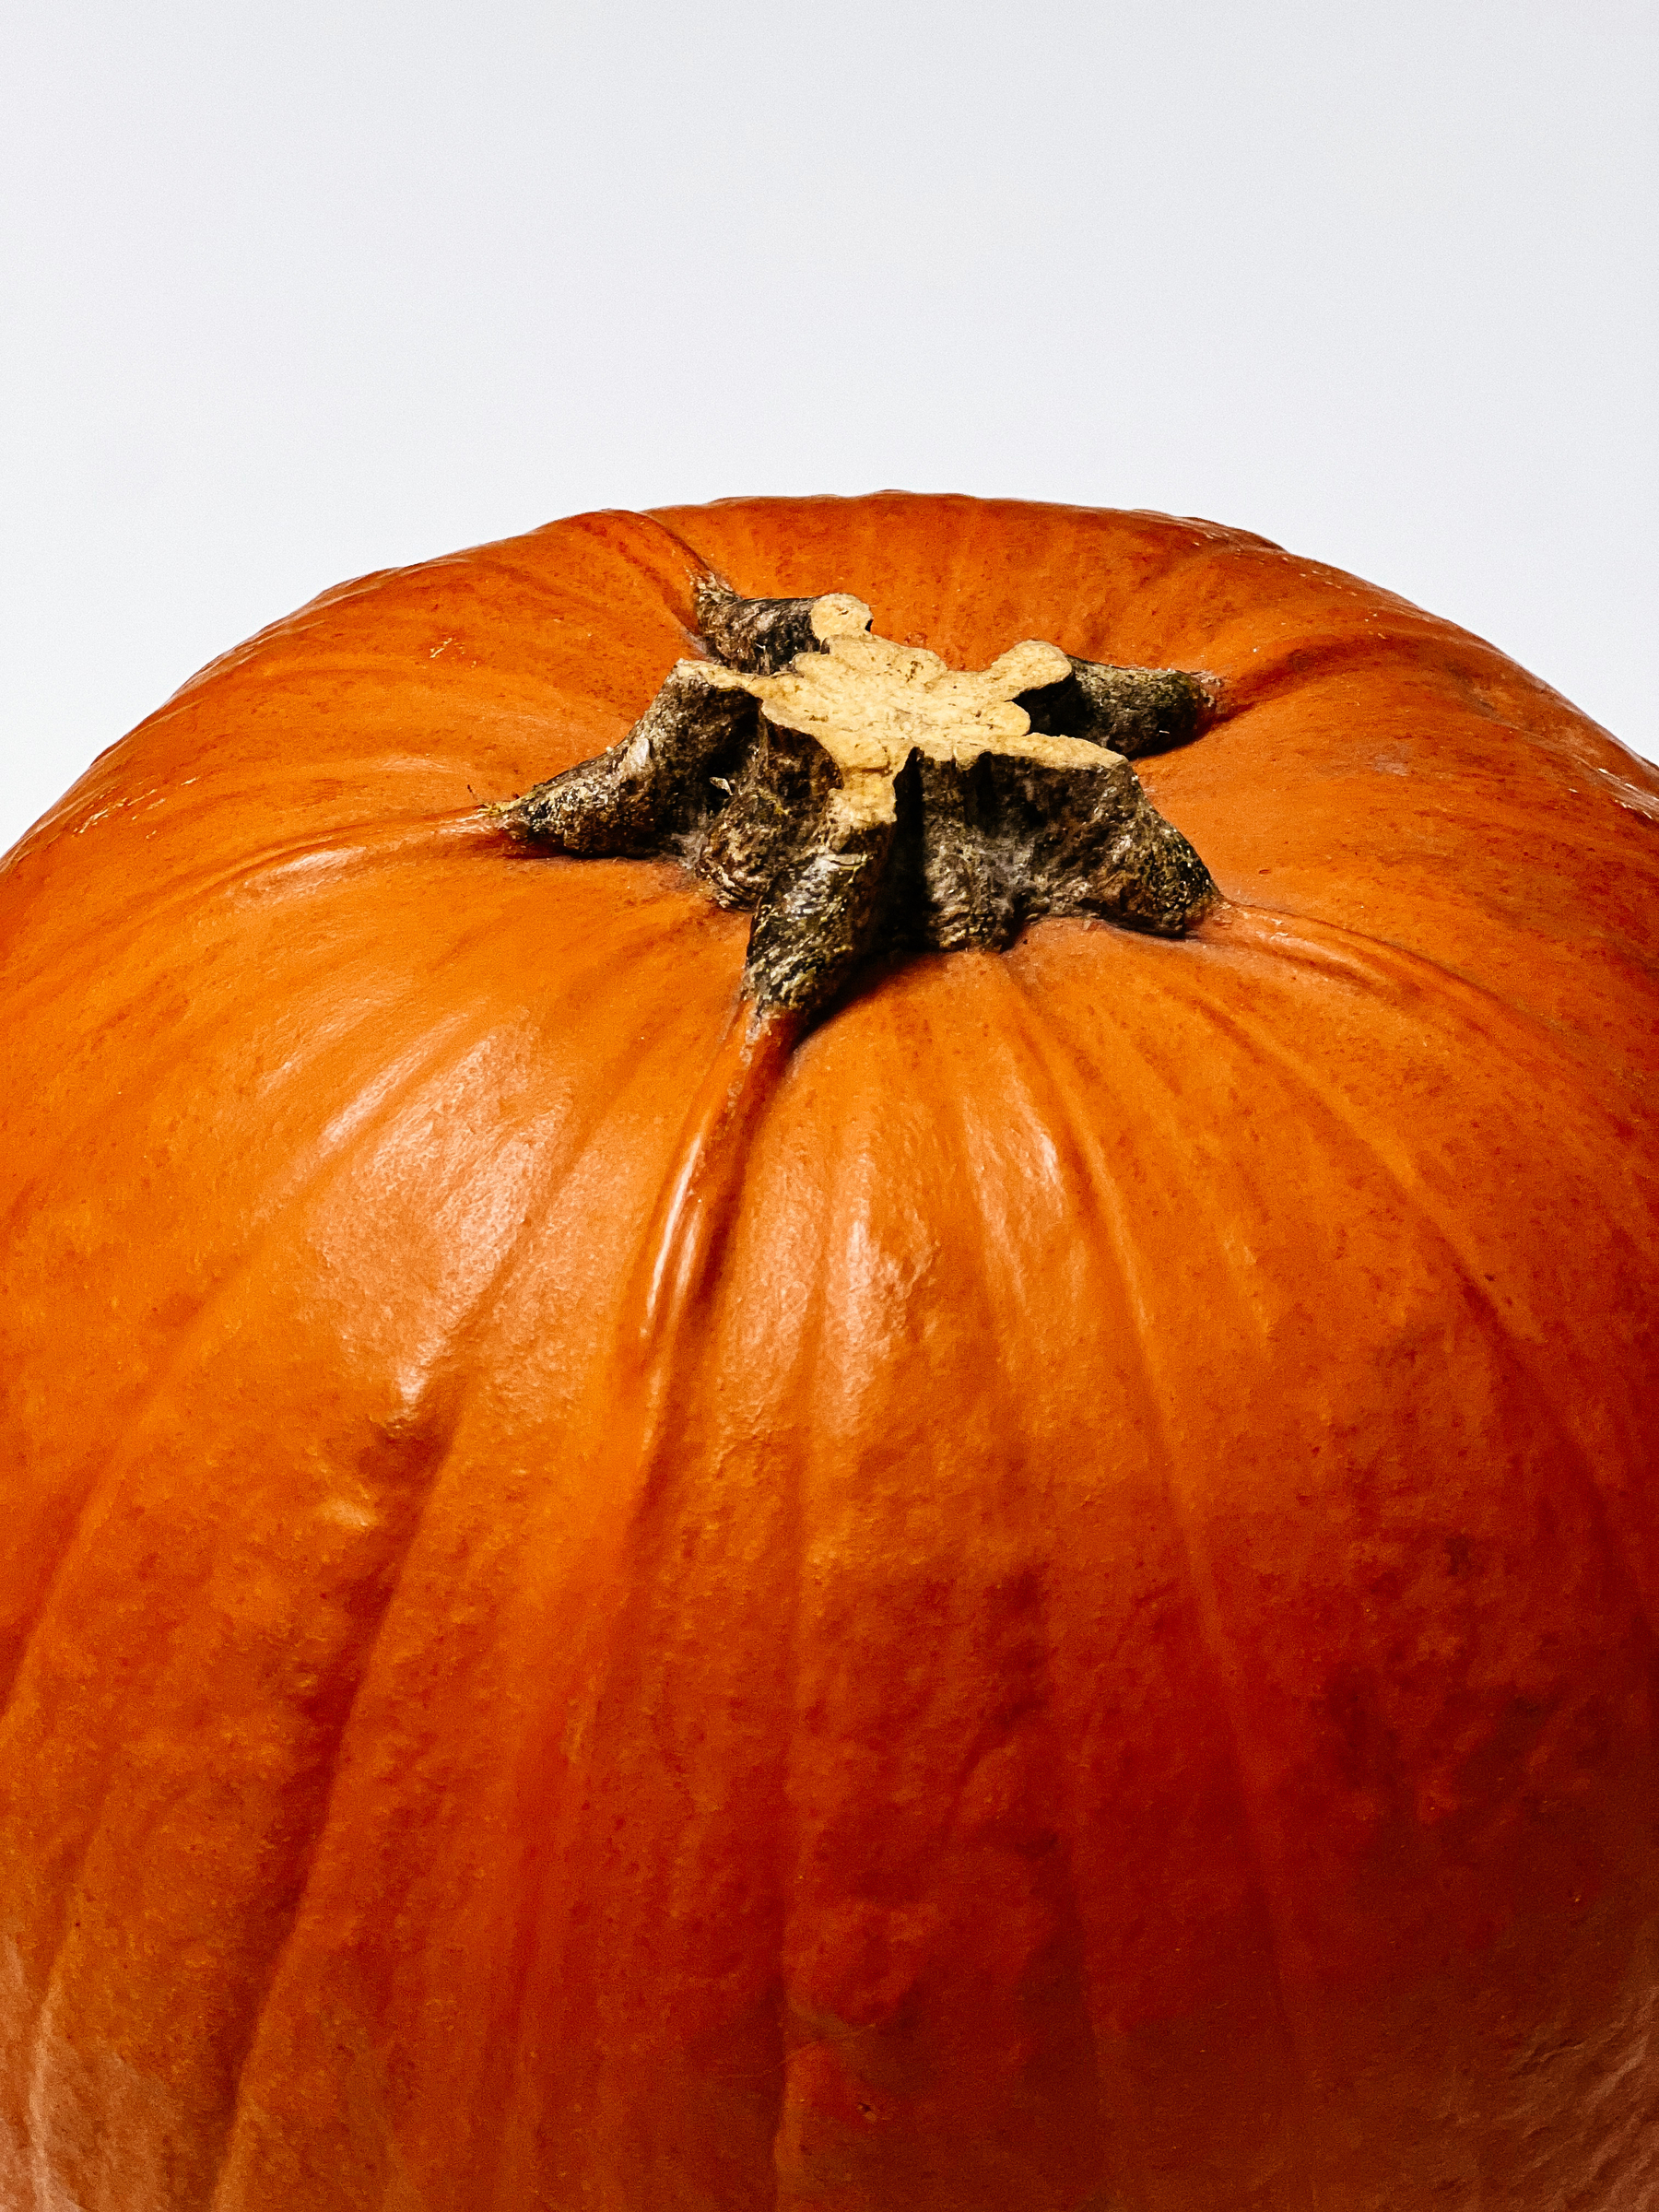 A pumpkin 